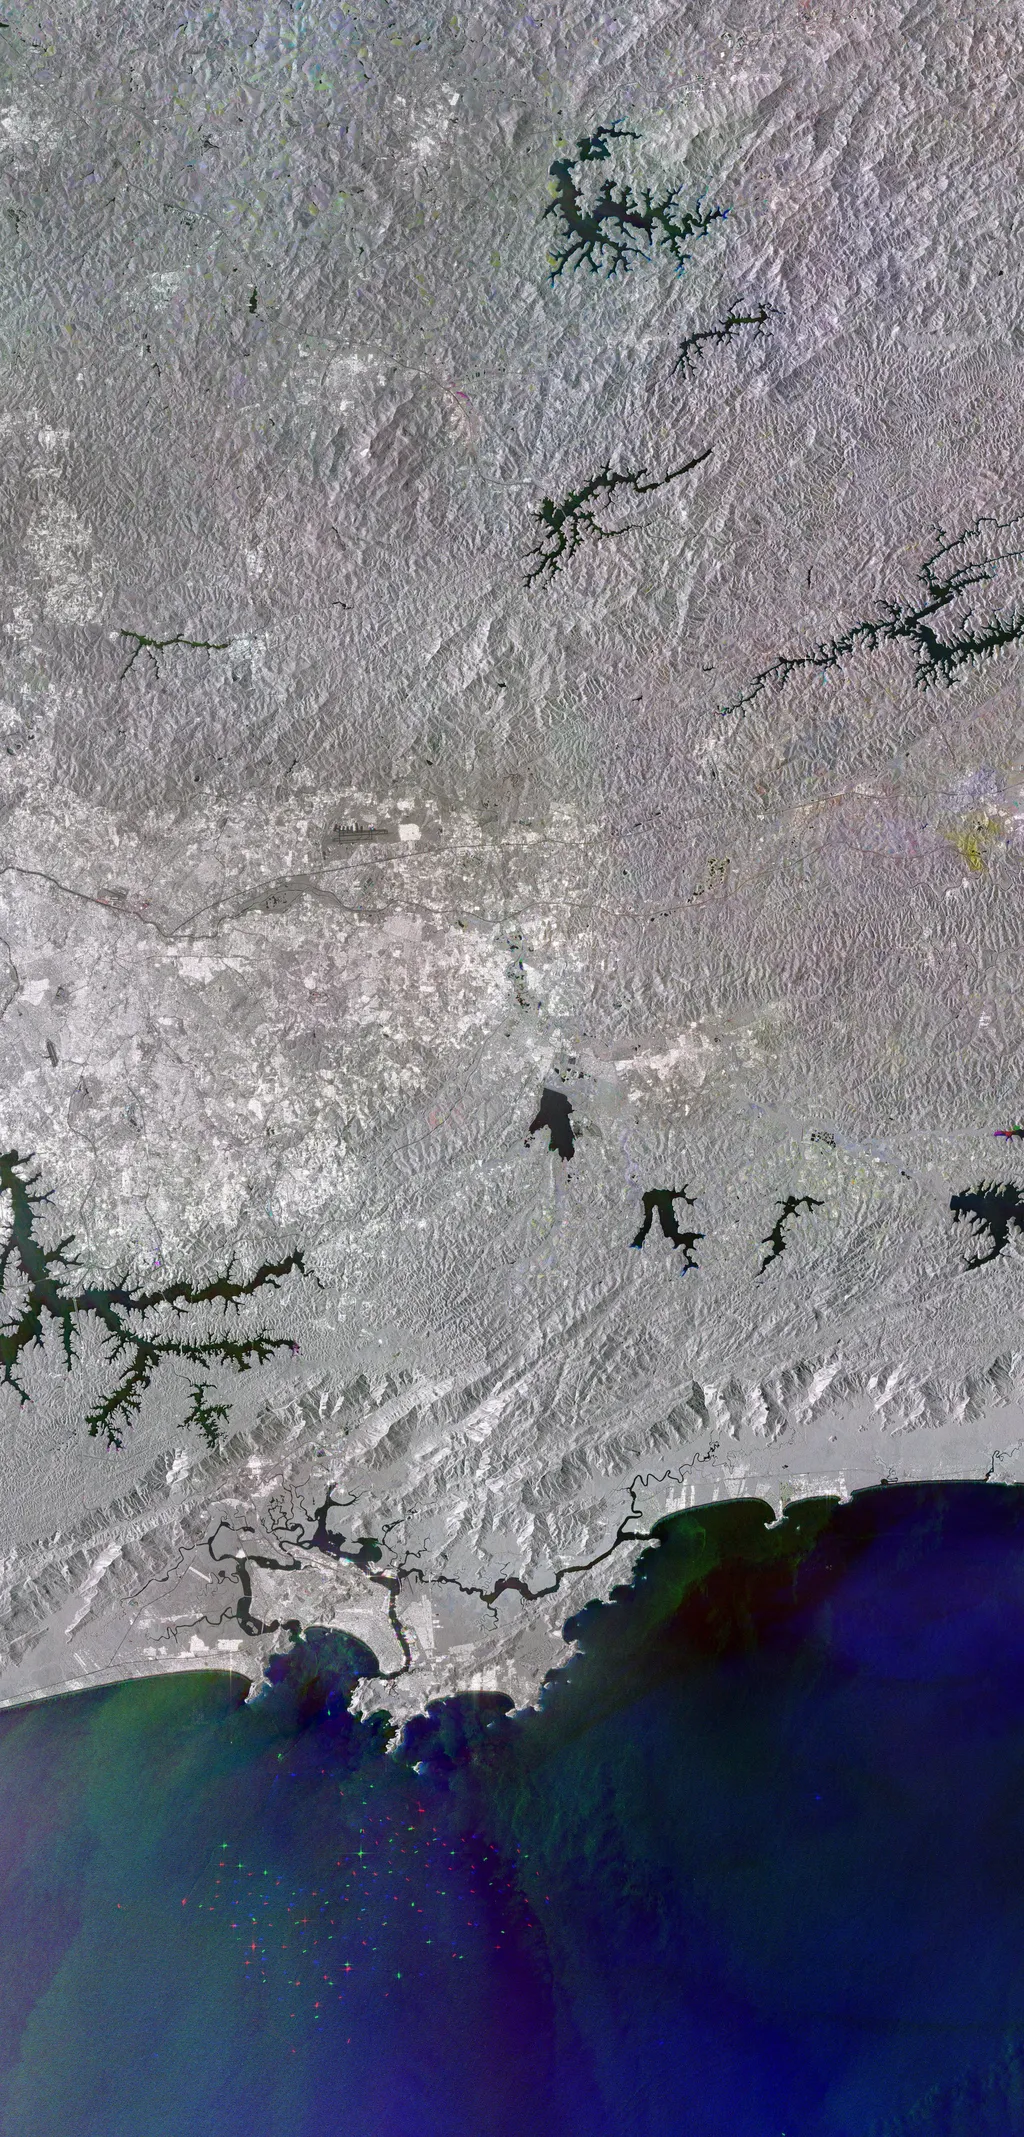 Cidade de São Paulo, Represa do Jaguari, Porto de Santos e mais nesta foto do satélite Sentinel-1 (Imagem: Reprodução/Copernicus Sentinel data/ESA)